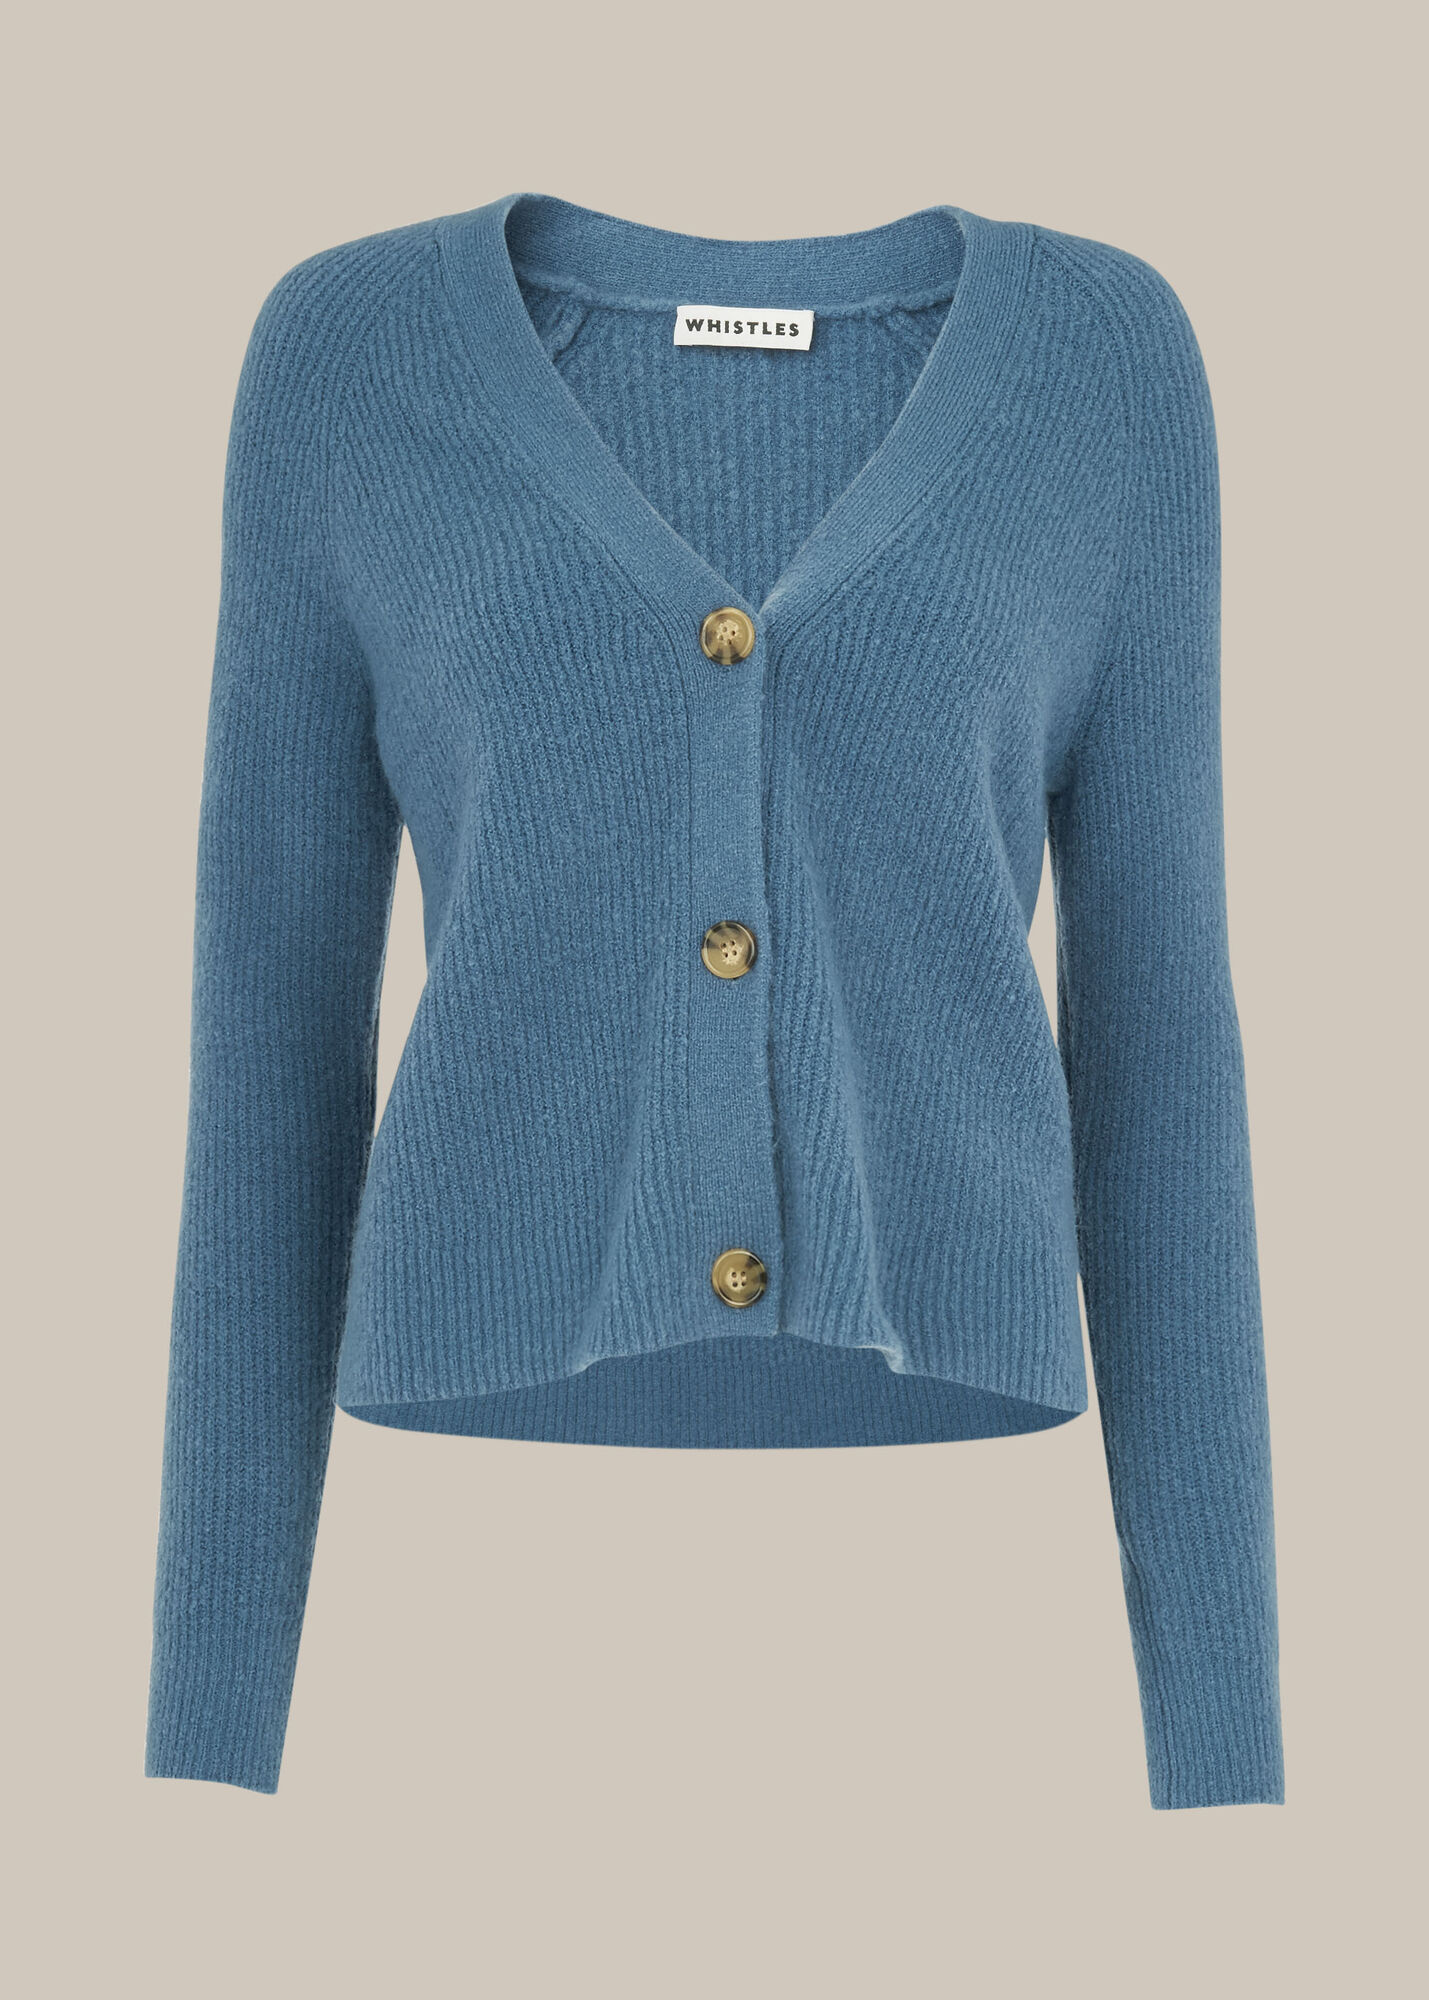 Blue Rib Textured Wool Mix Cardigan | WHISTLES | Whistles UK